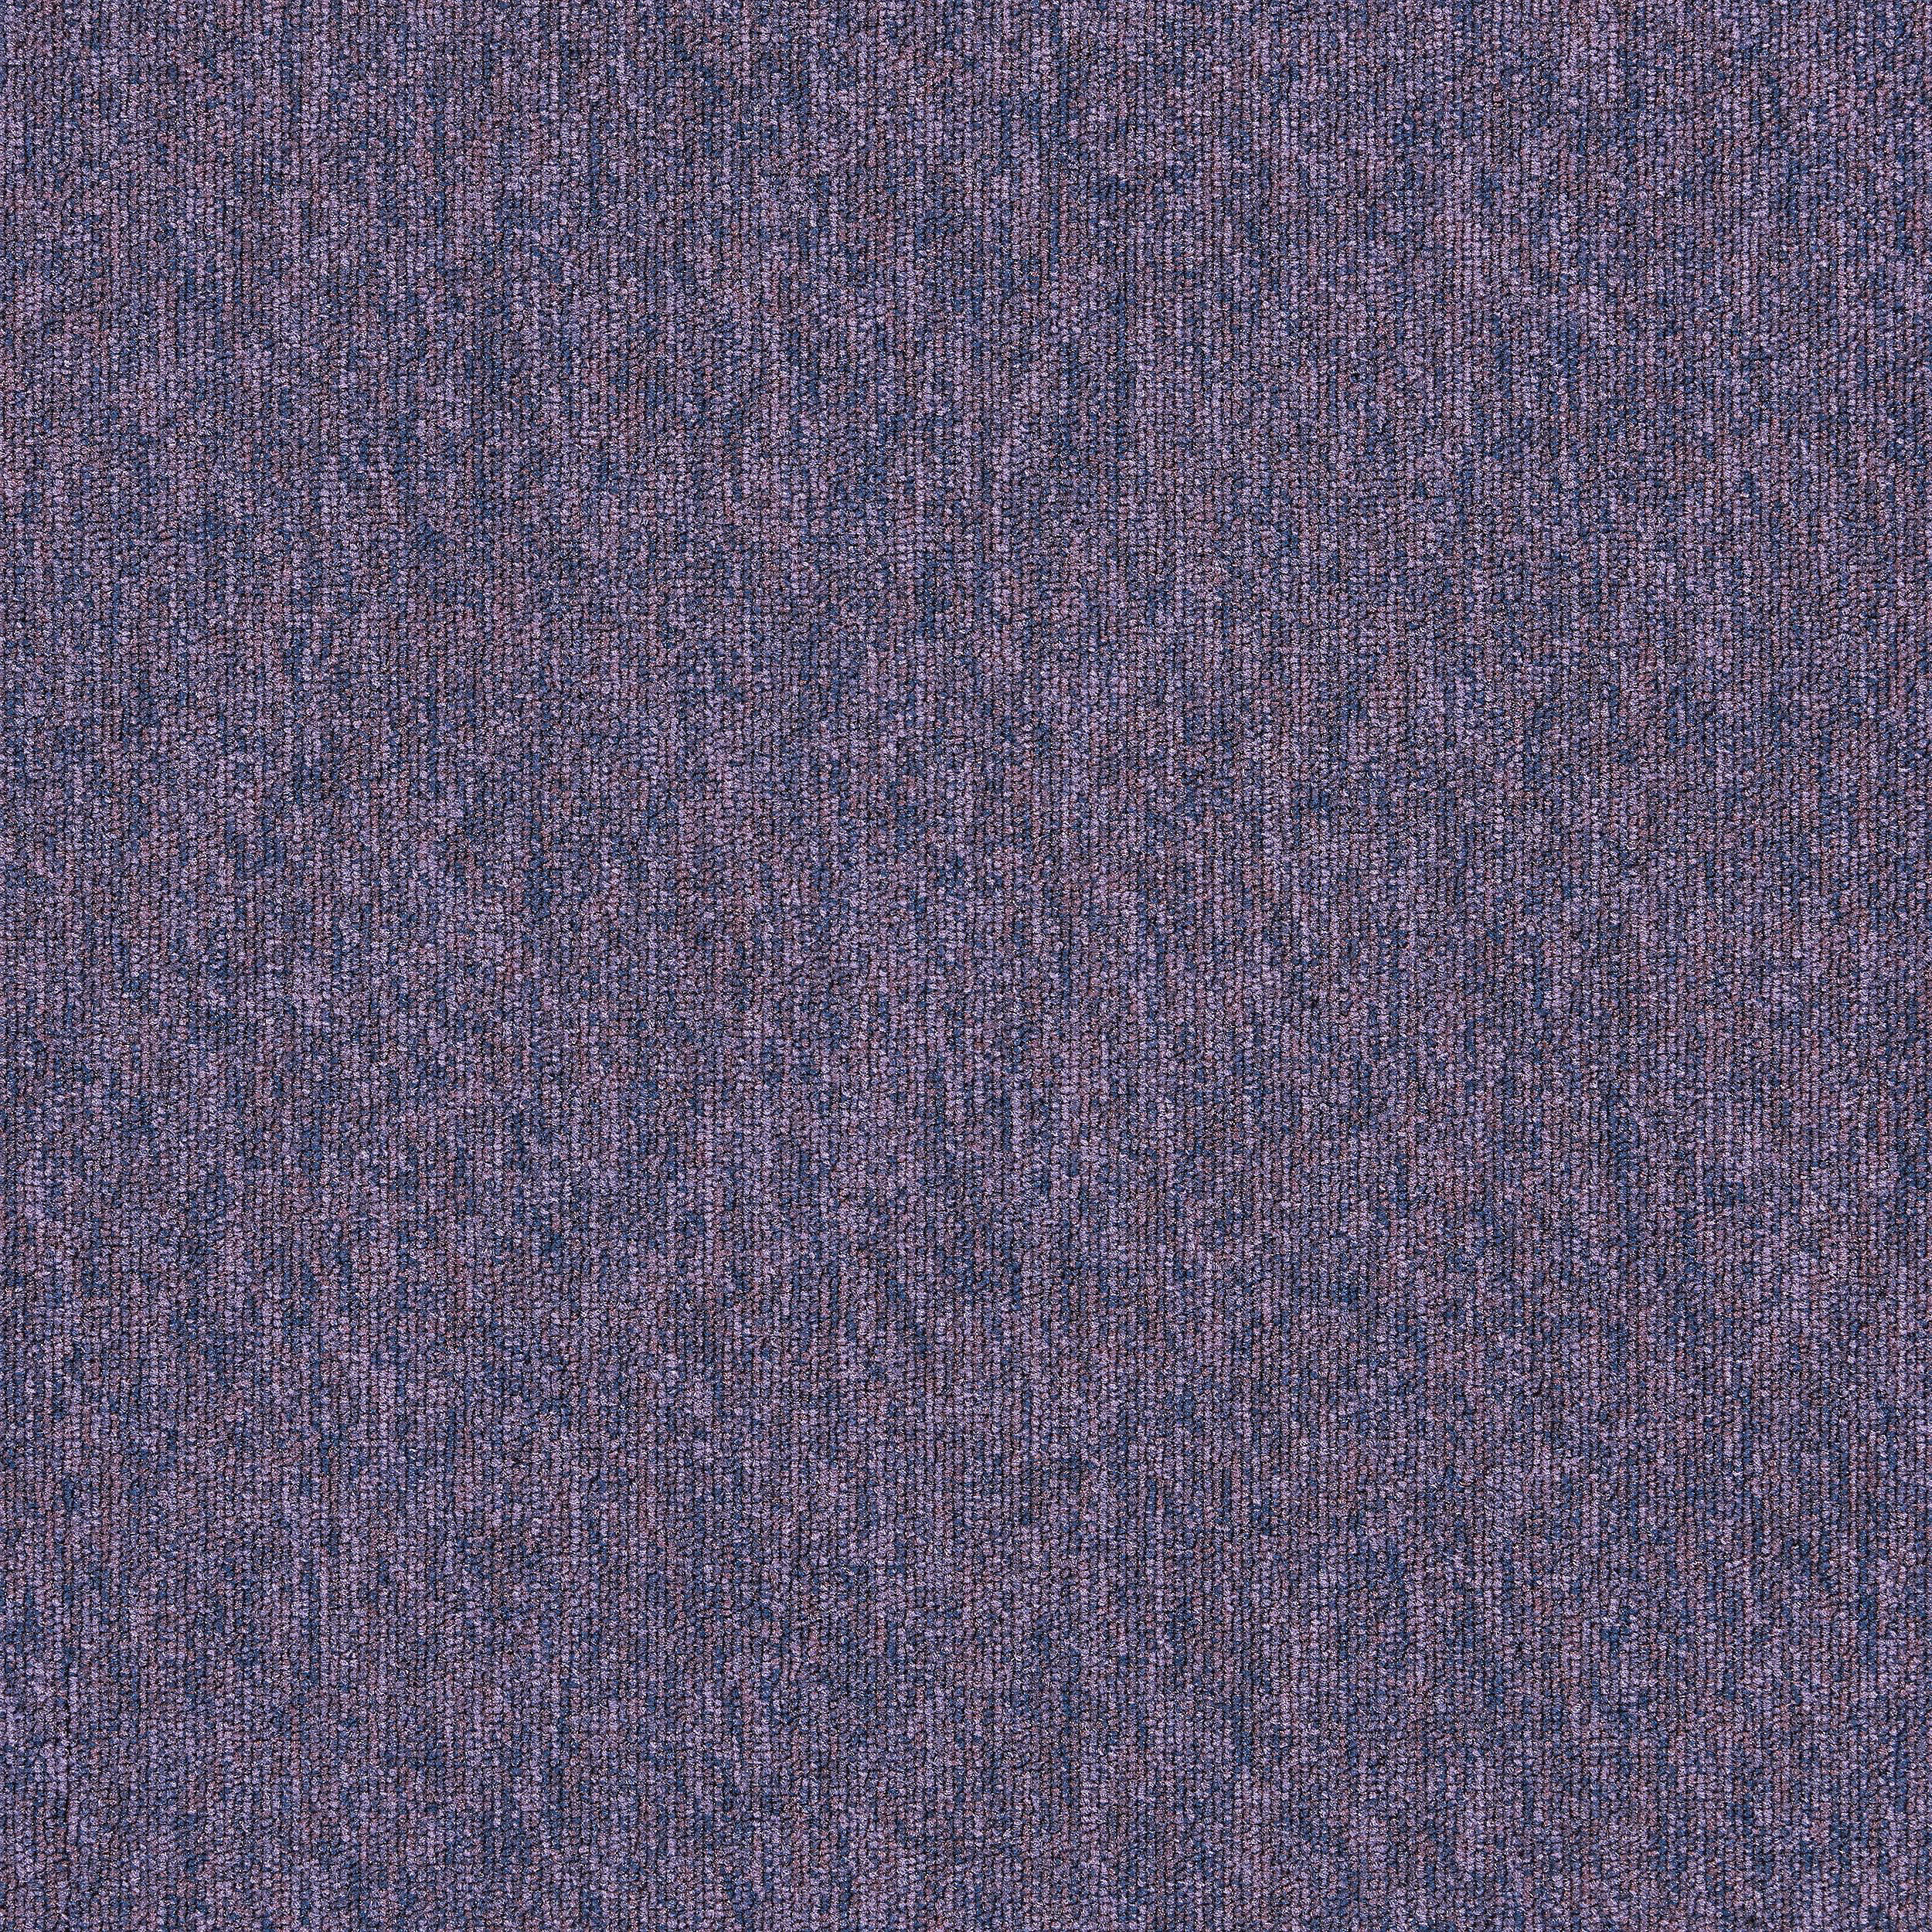 Employ Loop Carpet Tile In Lavender afbeeldingnummer 18